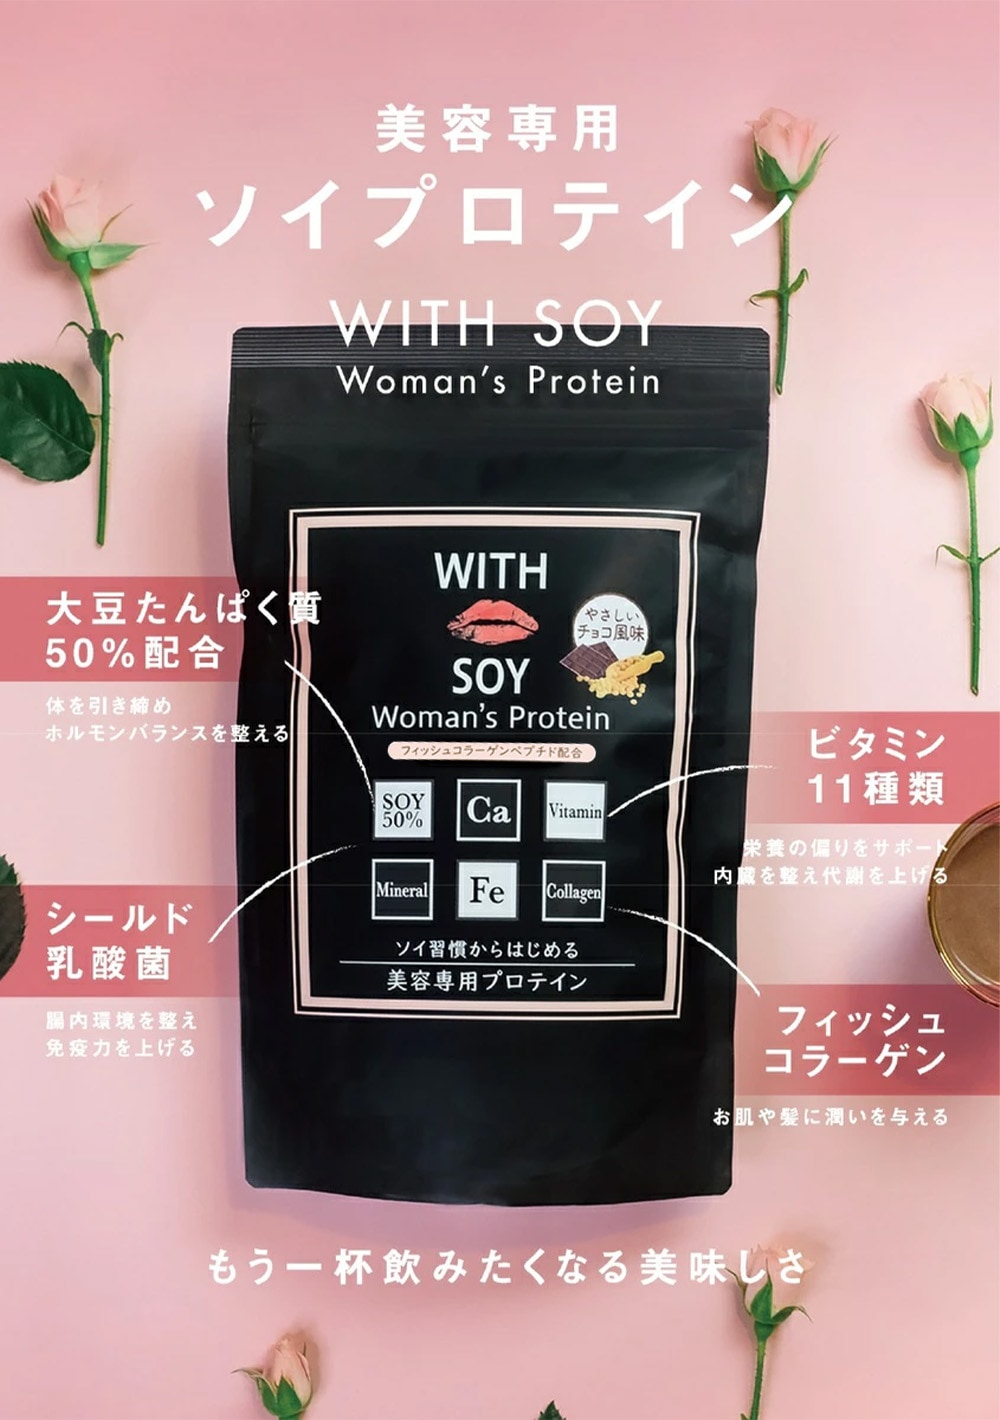 ウィズソイ ウーマンズプロテイン 500g チョコレート味（専用スプーン付き） WITH SOY Woman’s Protein 美容成分入り ソイプロテイン